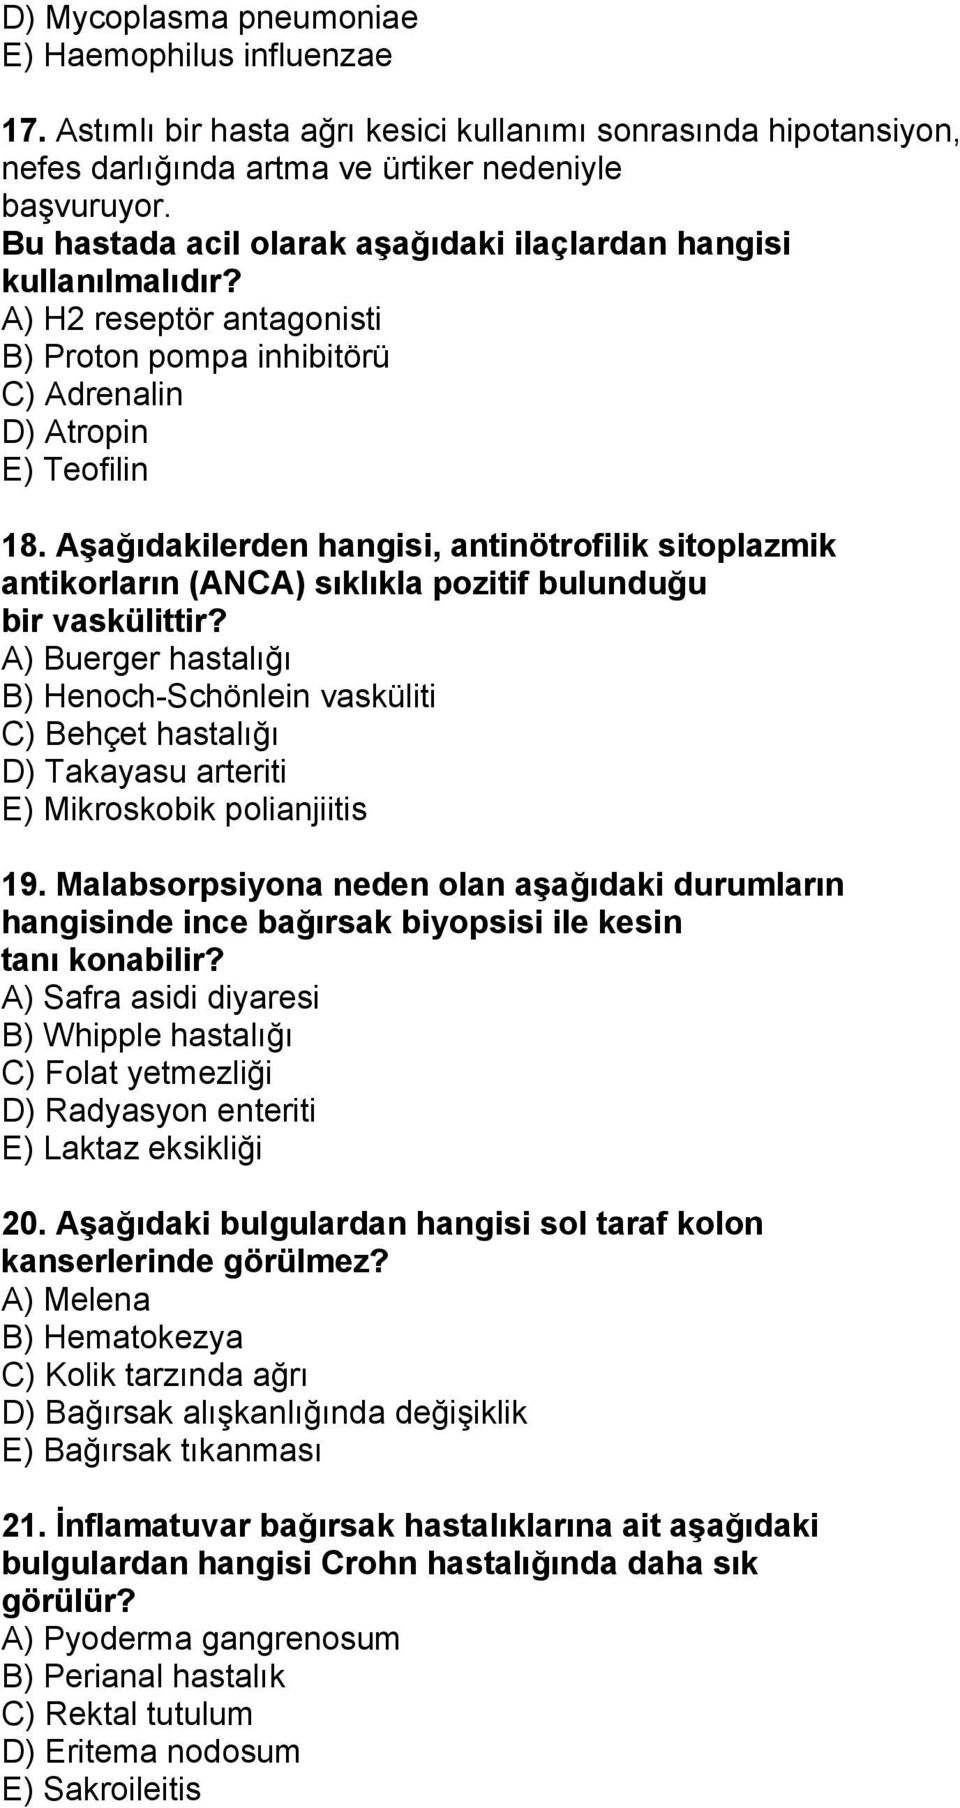 Aşağıdakilerden hangisi, antinötrofilik sitoplazmik antikorların (ANCA) sıklıkla pozitif bulunduğu bir vaskülittir?